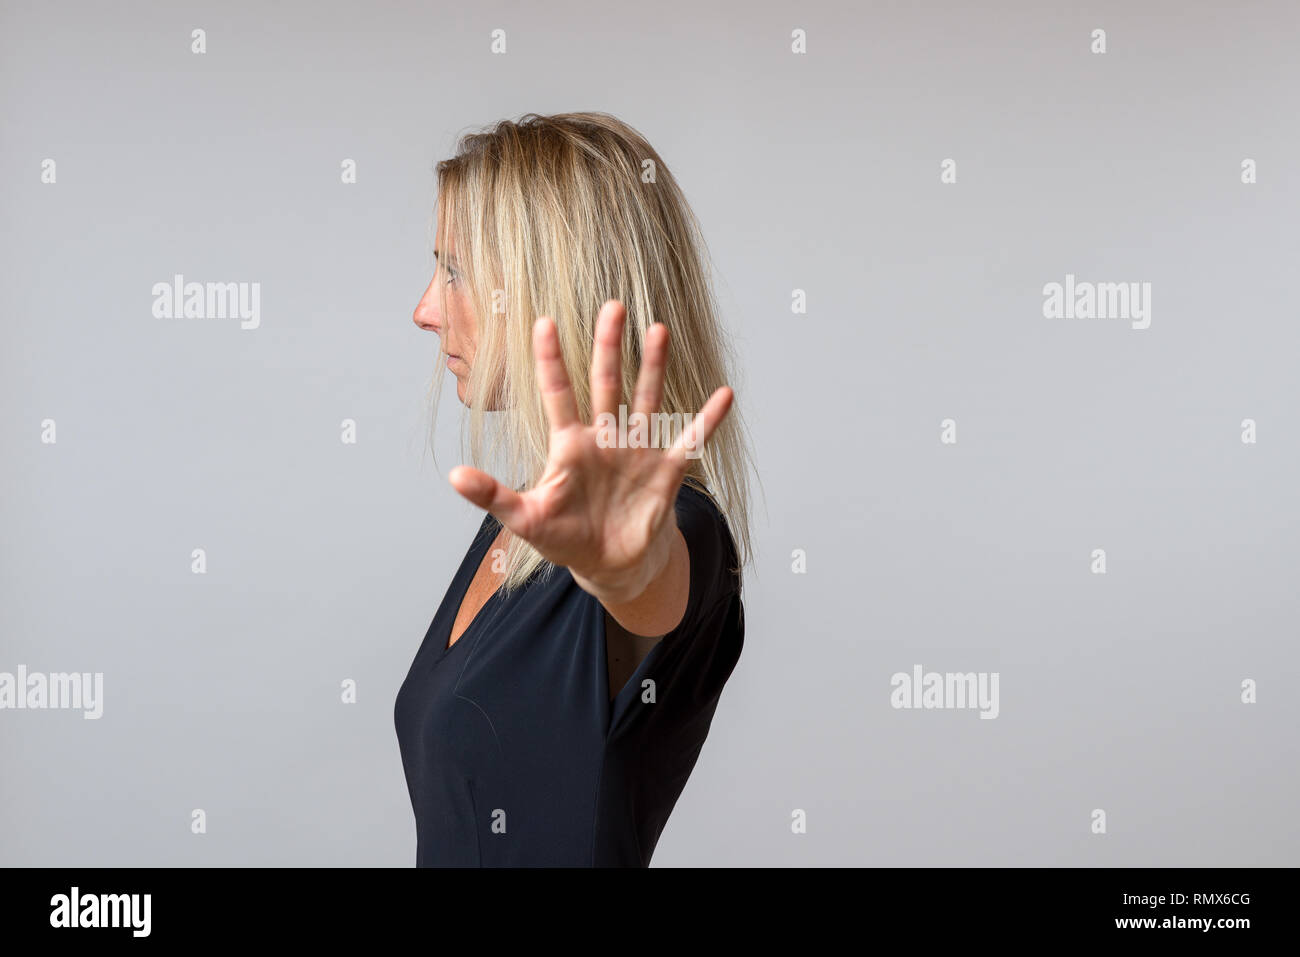 Imperioso arrogante donna gesticolando con la mano in un atteggiamento disfattista mentre si gira a lato Foto Stock